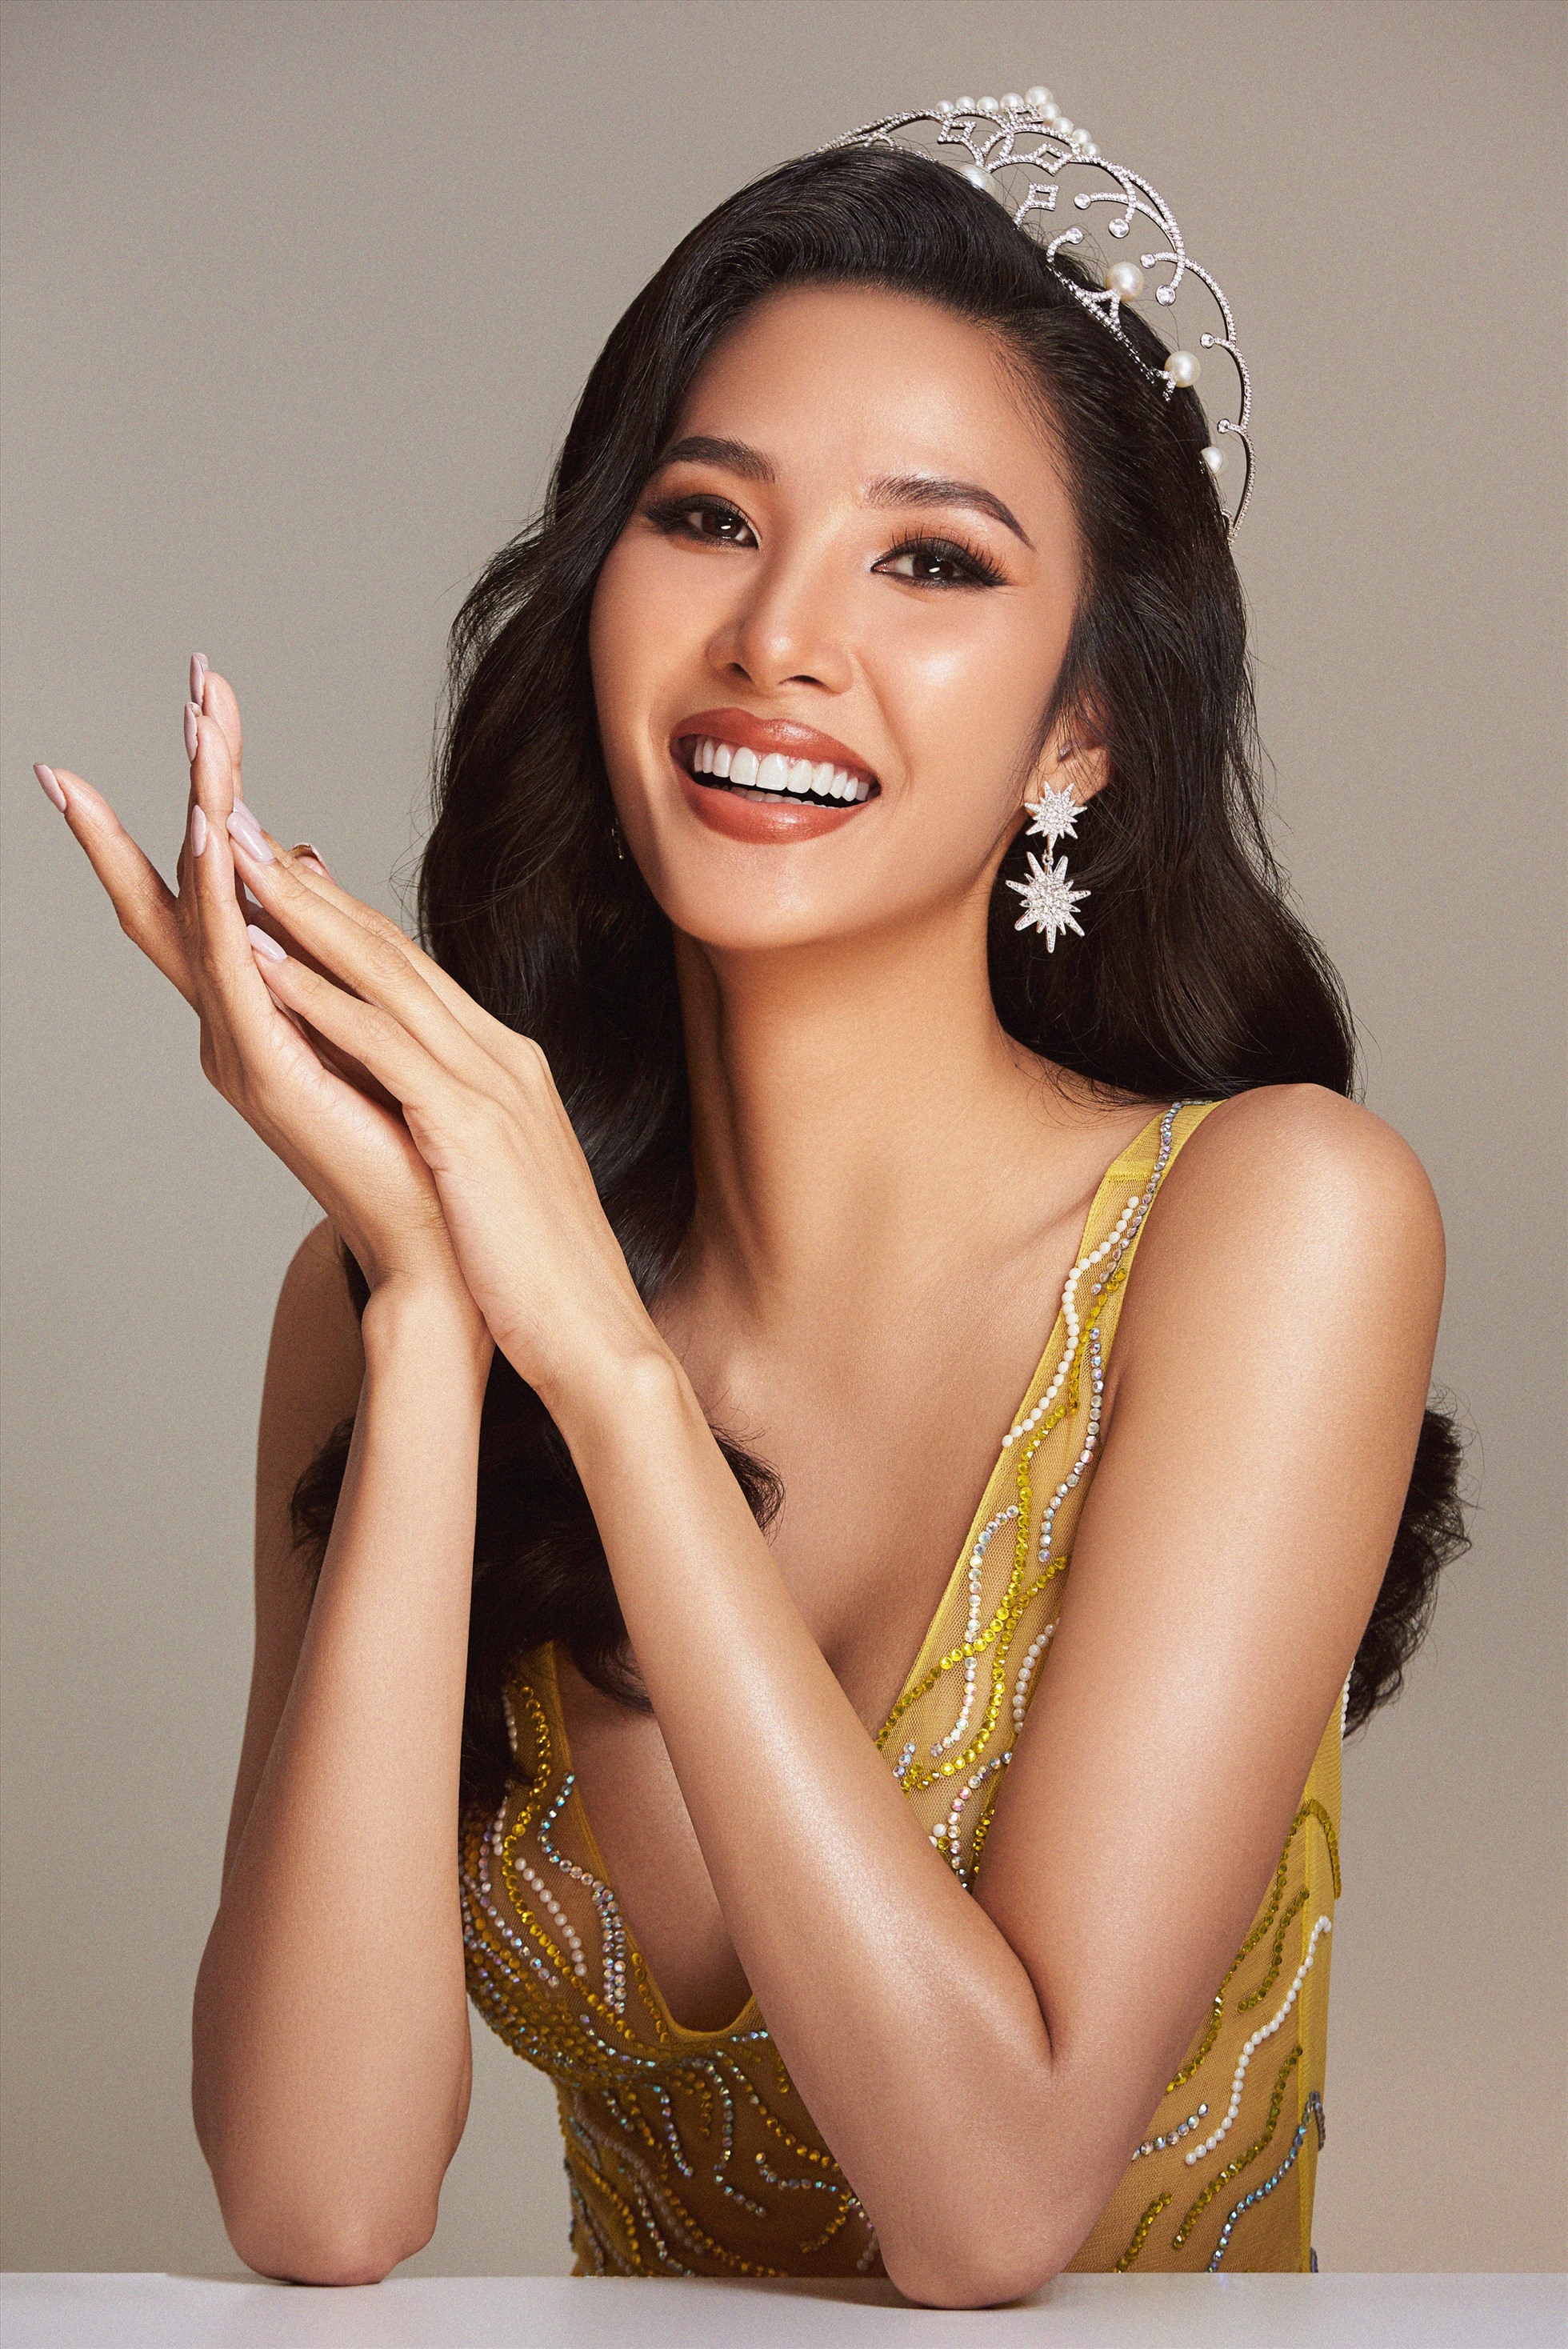 Đồng hành cùng “Hoa hậu Siêu Quốc gia Việt Nam” với kinh nghiệm dày dặn, những thành tích nổi bật chắc chắn rằng Hoàng Thuỳ sẽ mang đến những điều thú vị cho chương trình và tìm ra cái tên xứng đáng đại diện Việt Nam tại đấu trường “Miss Supranational 2023”. Ảnh: BTC.